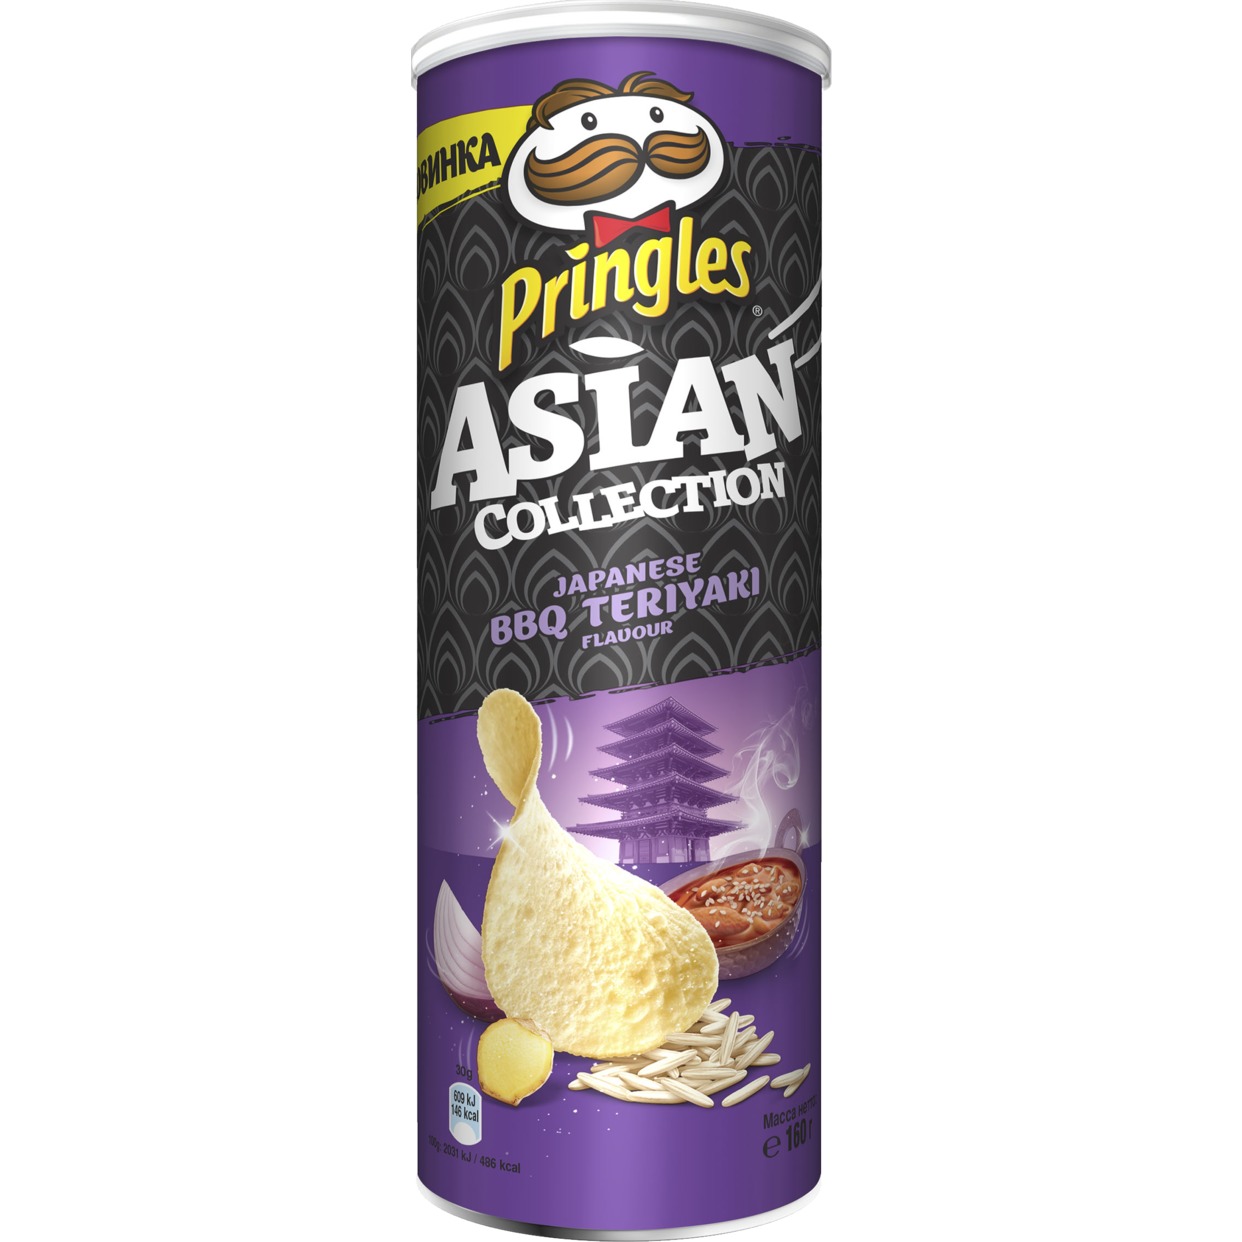 Рисовые чипсы Pringles "Asian Collection" со вкусом "Соуса барбекю терияки по-японски", 160 гр по акции в Пятерочке